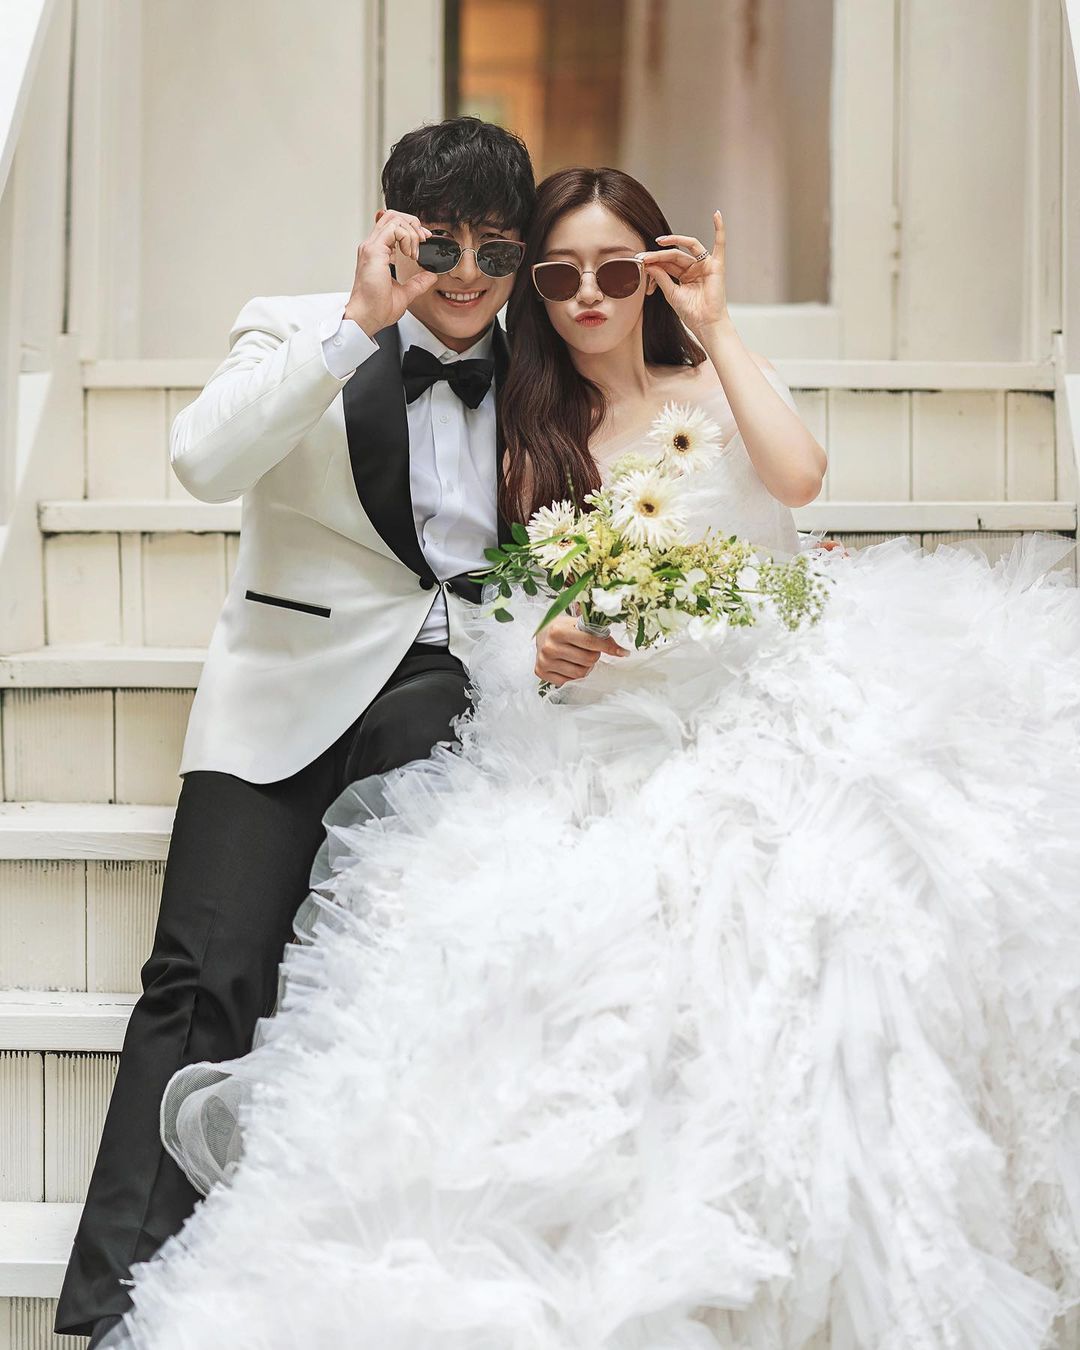 Jiyeon trong một chiếc váy cưới rực rỡ đẹp như nàng công chúa sẽ khiến bạn liên tưởng đến những câu chuyện cổ tích. Những bức ảnh cưới của cô sẽ làm bạn thấy nét đẹp, sự quyến rũ và tình cảm đích thực của người phụ nữ trong ngày cưới.